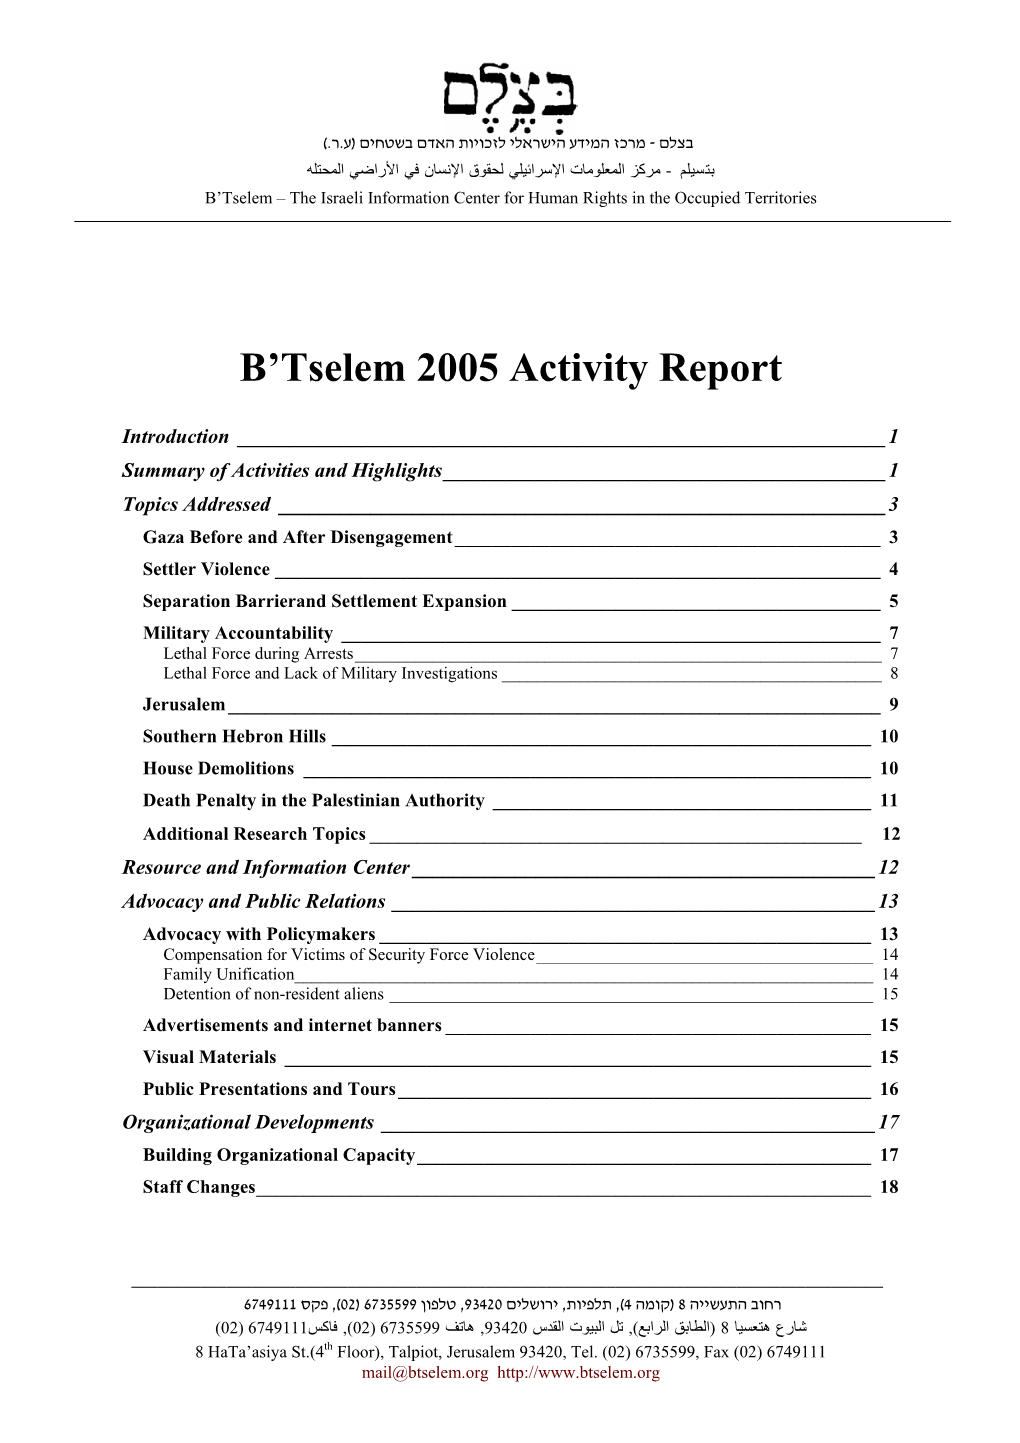 B'tselem 2005 Annual Report